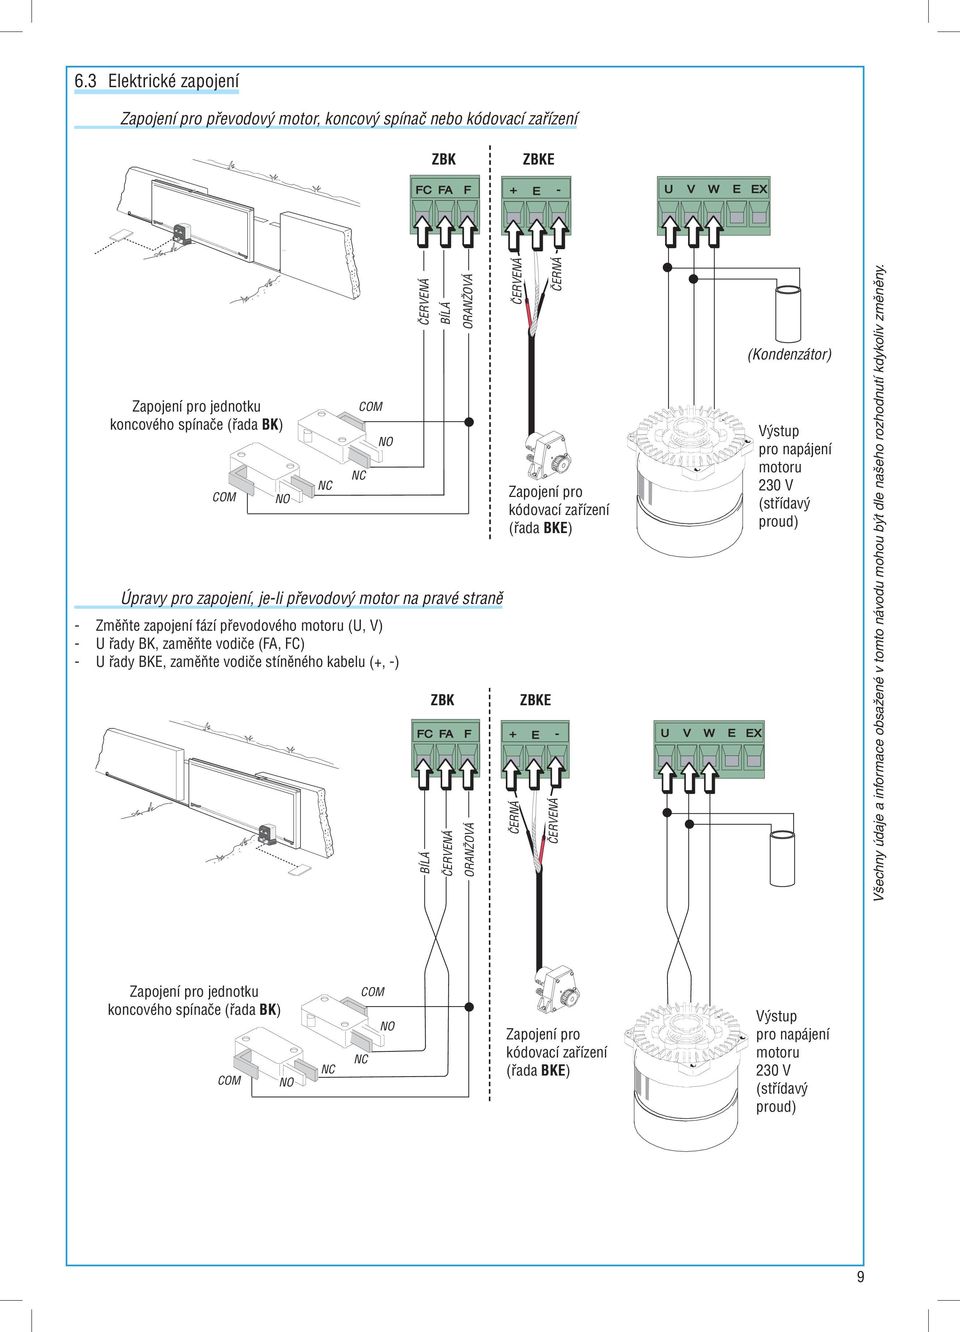 stíněného kabelu (+, -) ZBK BÍLÁ ČERVENÁ ORANŽOVÁ ORANŽOVÁ ČERVENÁ ČERNÁ Zapojení pro kódovací zařízení (řada BKE) ČERNÁ ZBKE ČERVENÁ (Kondenzátor) Výstup pro napájení motoru 230